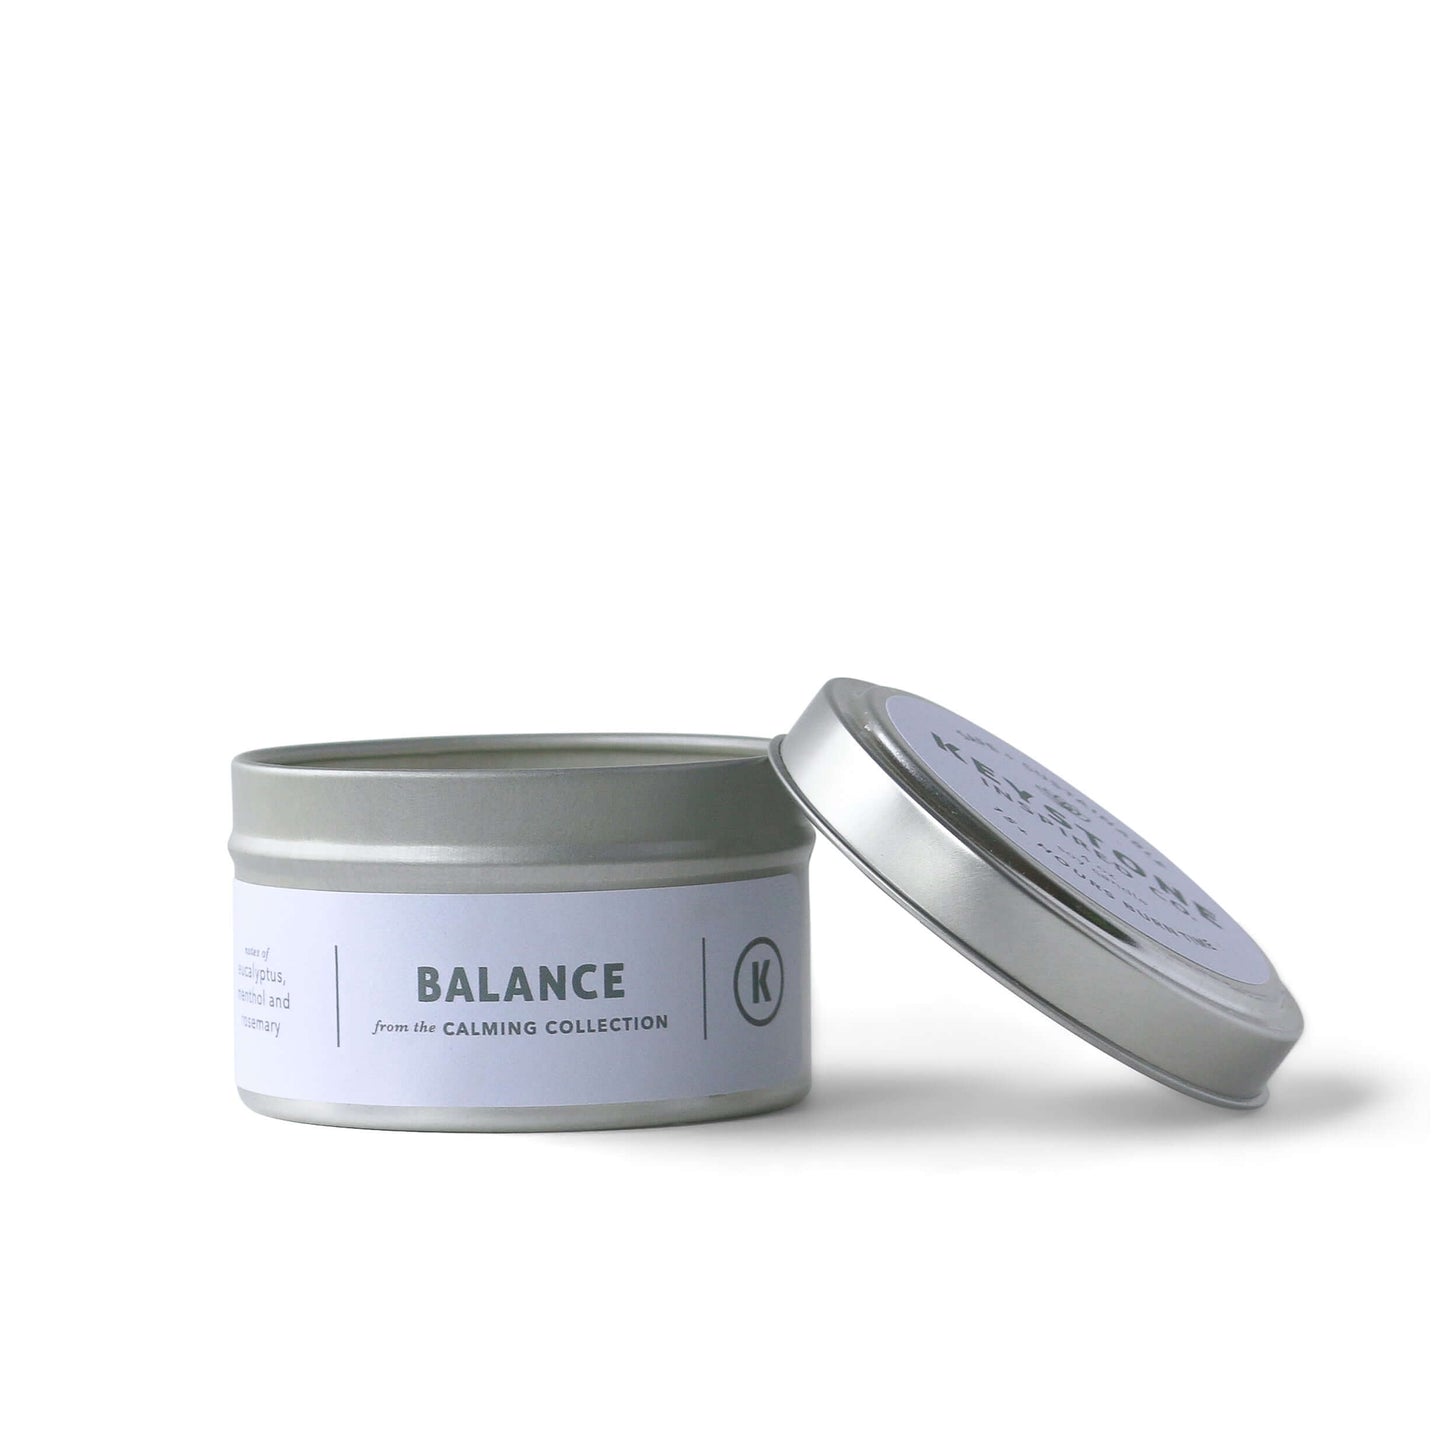 Eco-friendly Balance | Calming Collection | 4 oz tin candle